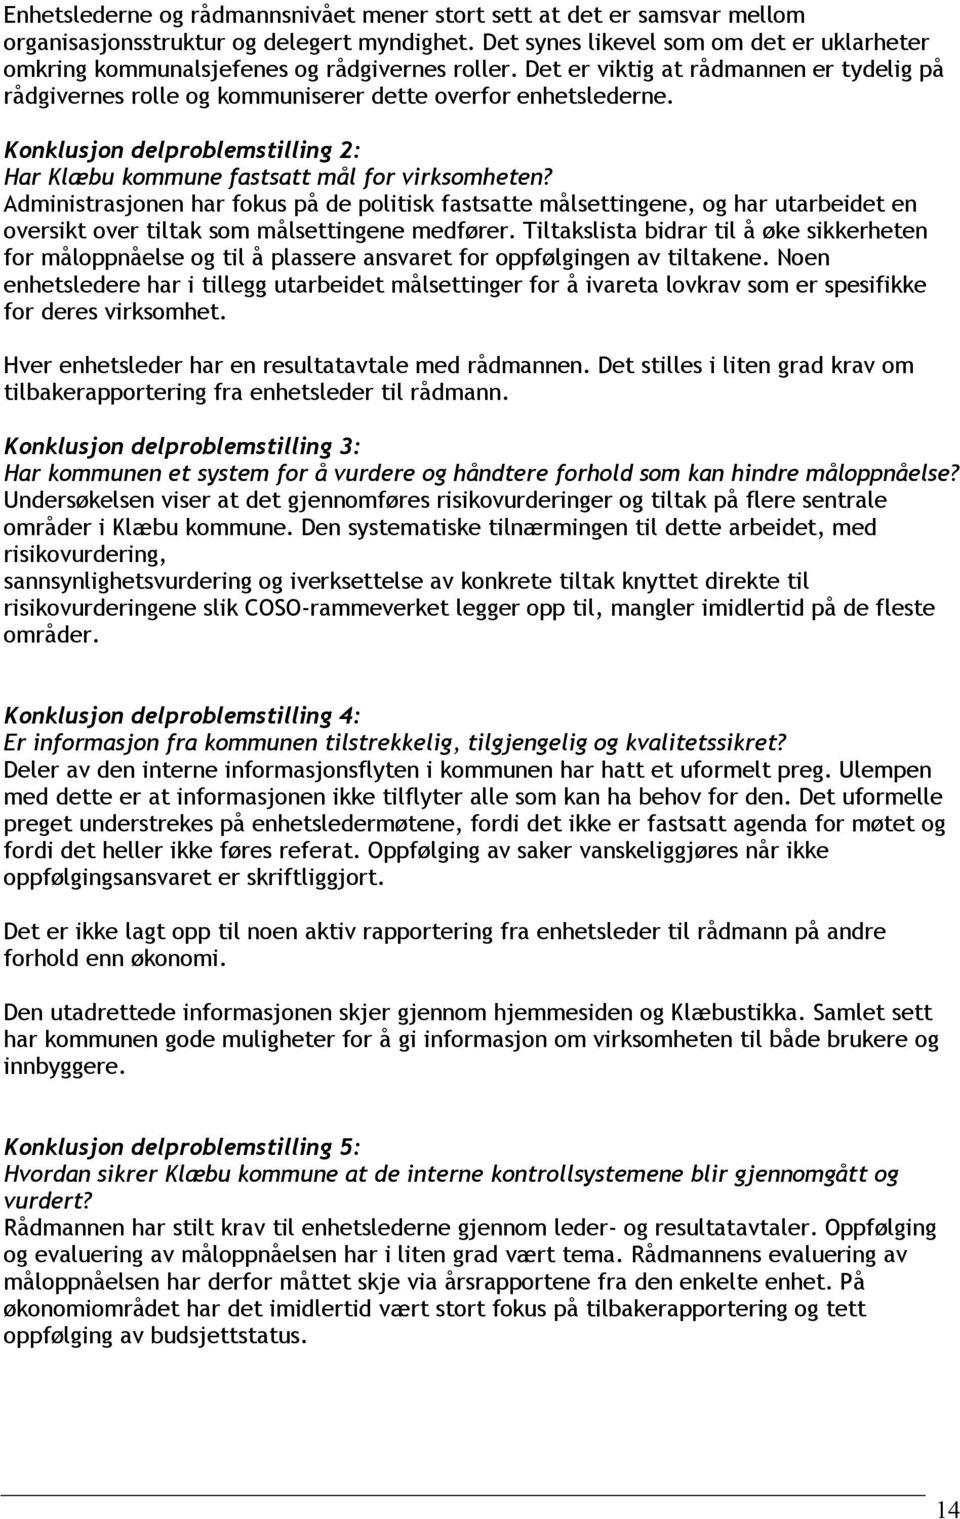 Konklusjon delproblemstilling 2: Har Klæbu kommune fastsatt mål for virksomheten?